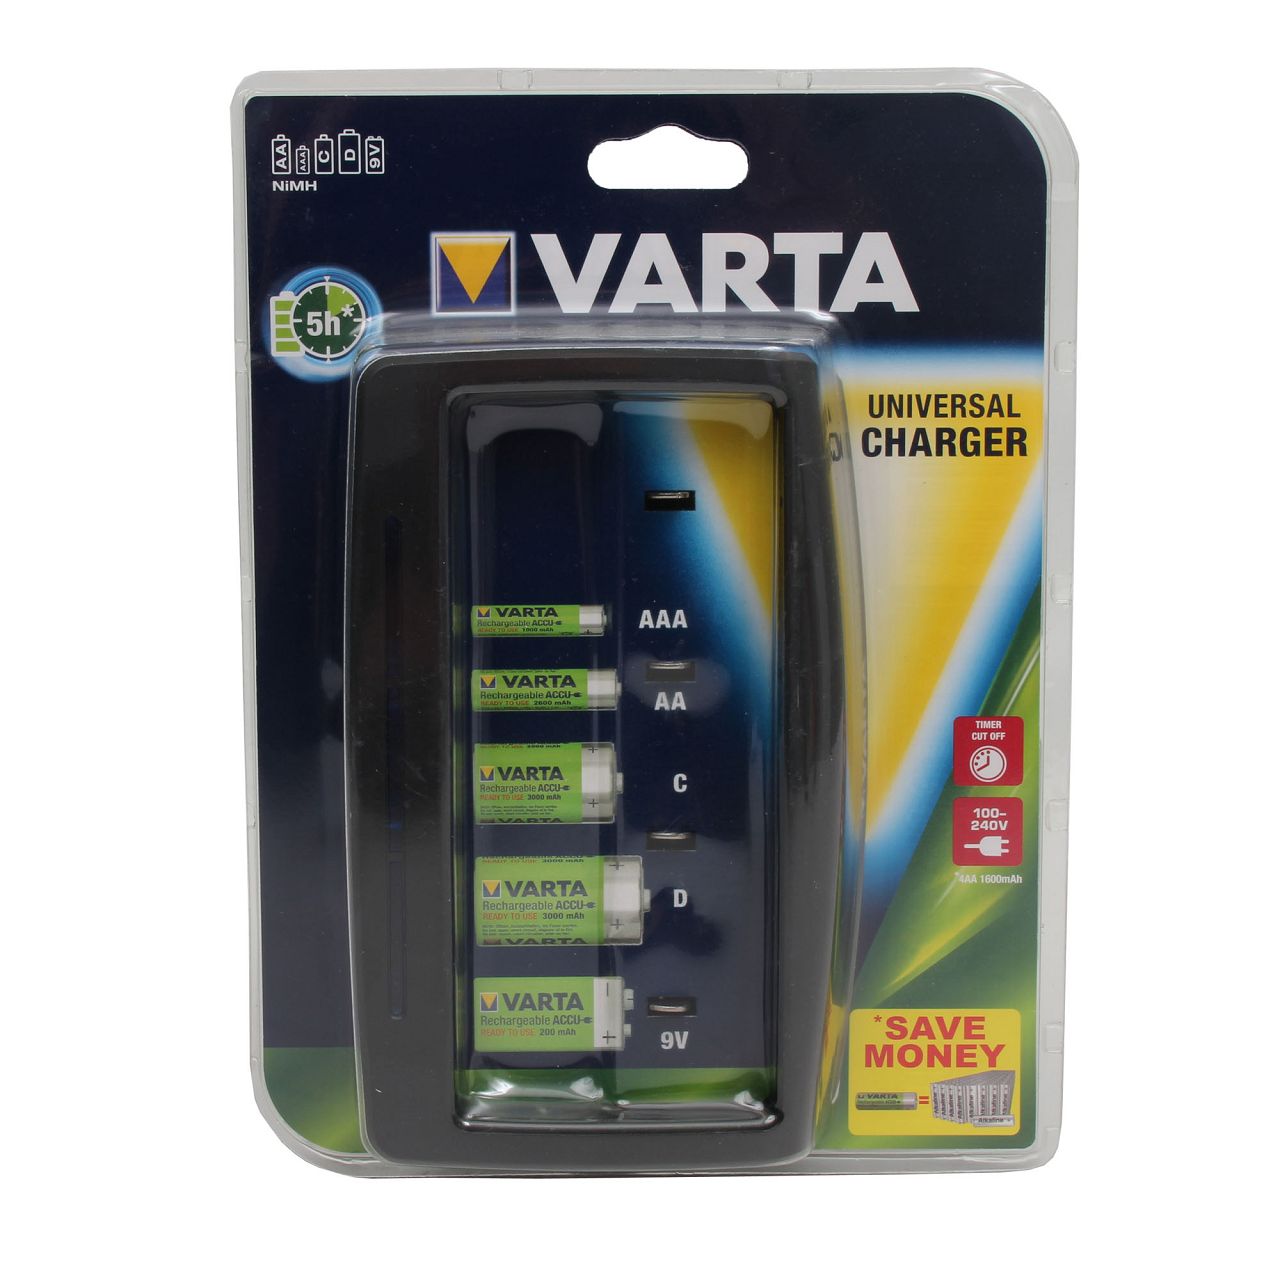 VARTA Universal Batterieladegerät Ladegerät EASY ENERGY für AAA, AA, C, D